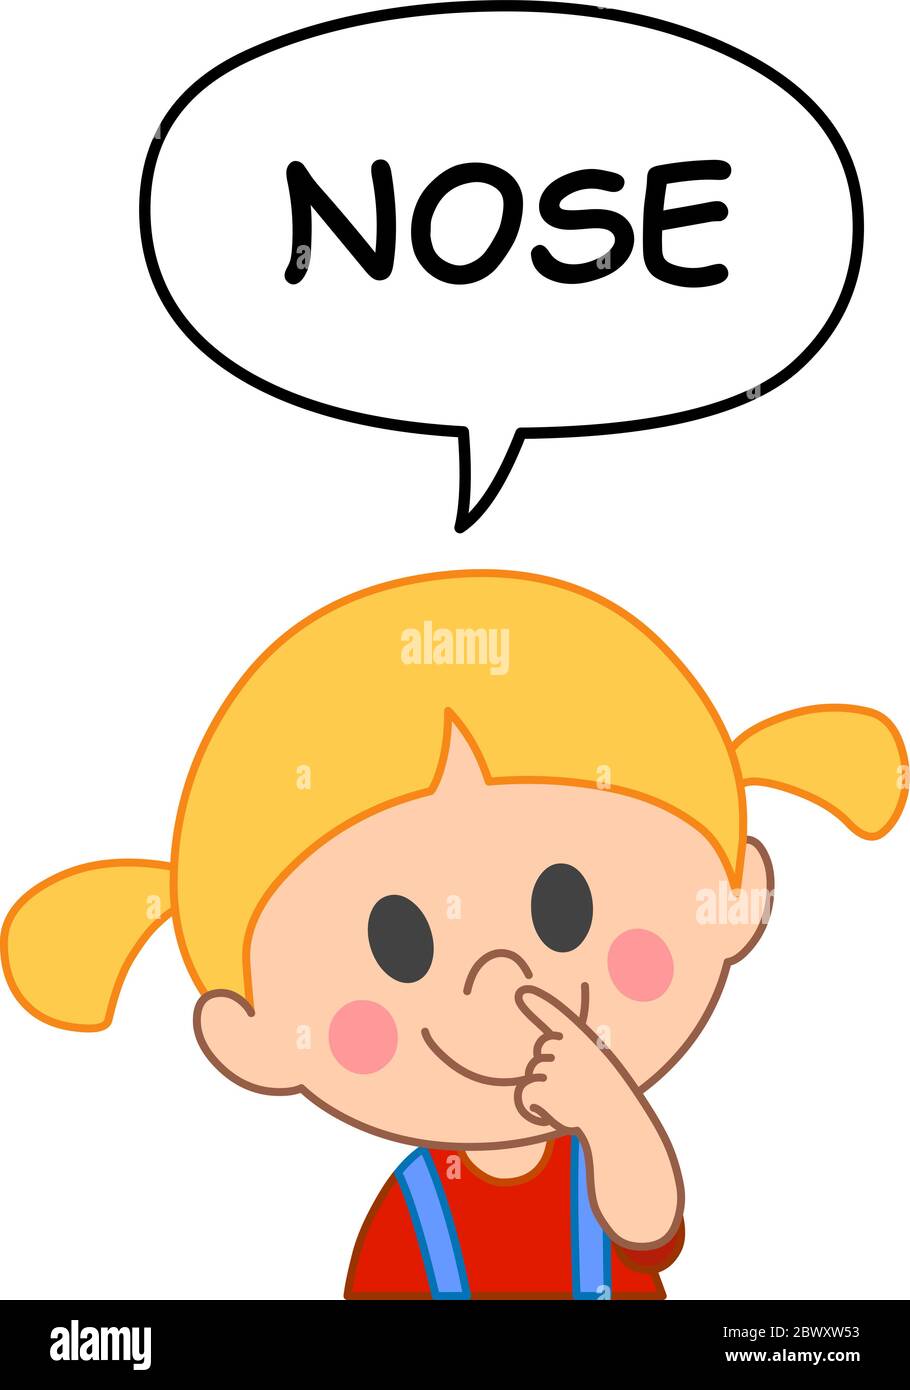 Junges Mädchen, das auf eine Sprechblase zeigt und Nase sagt. Illustration von der Benennung von Gesicht und Körperteilen ernst. Stock Vektor